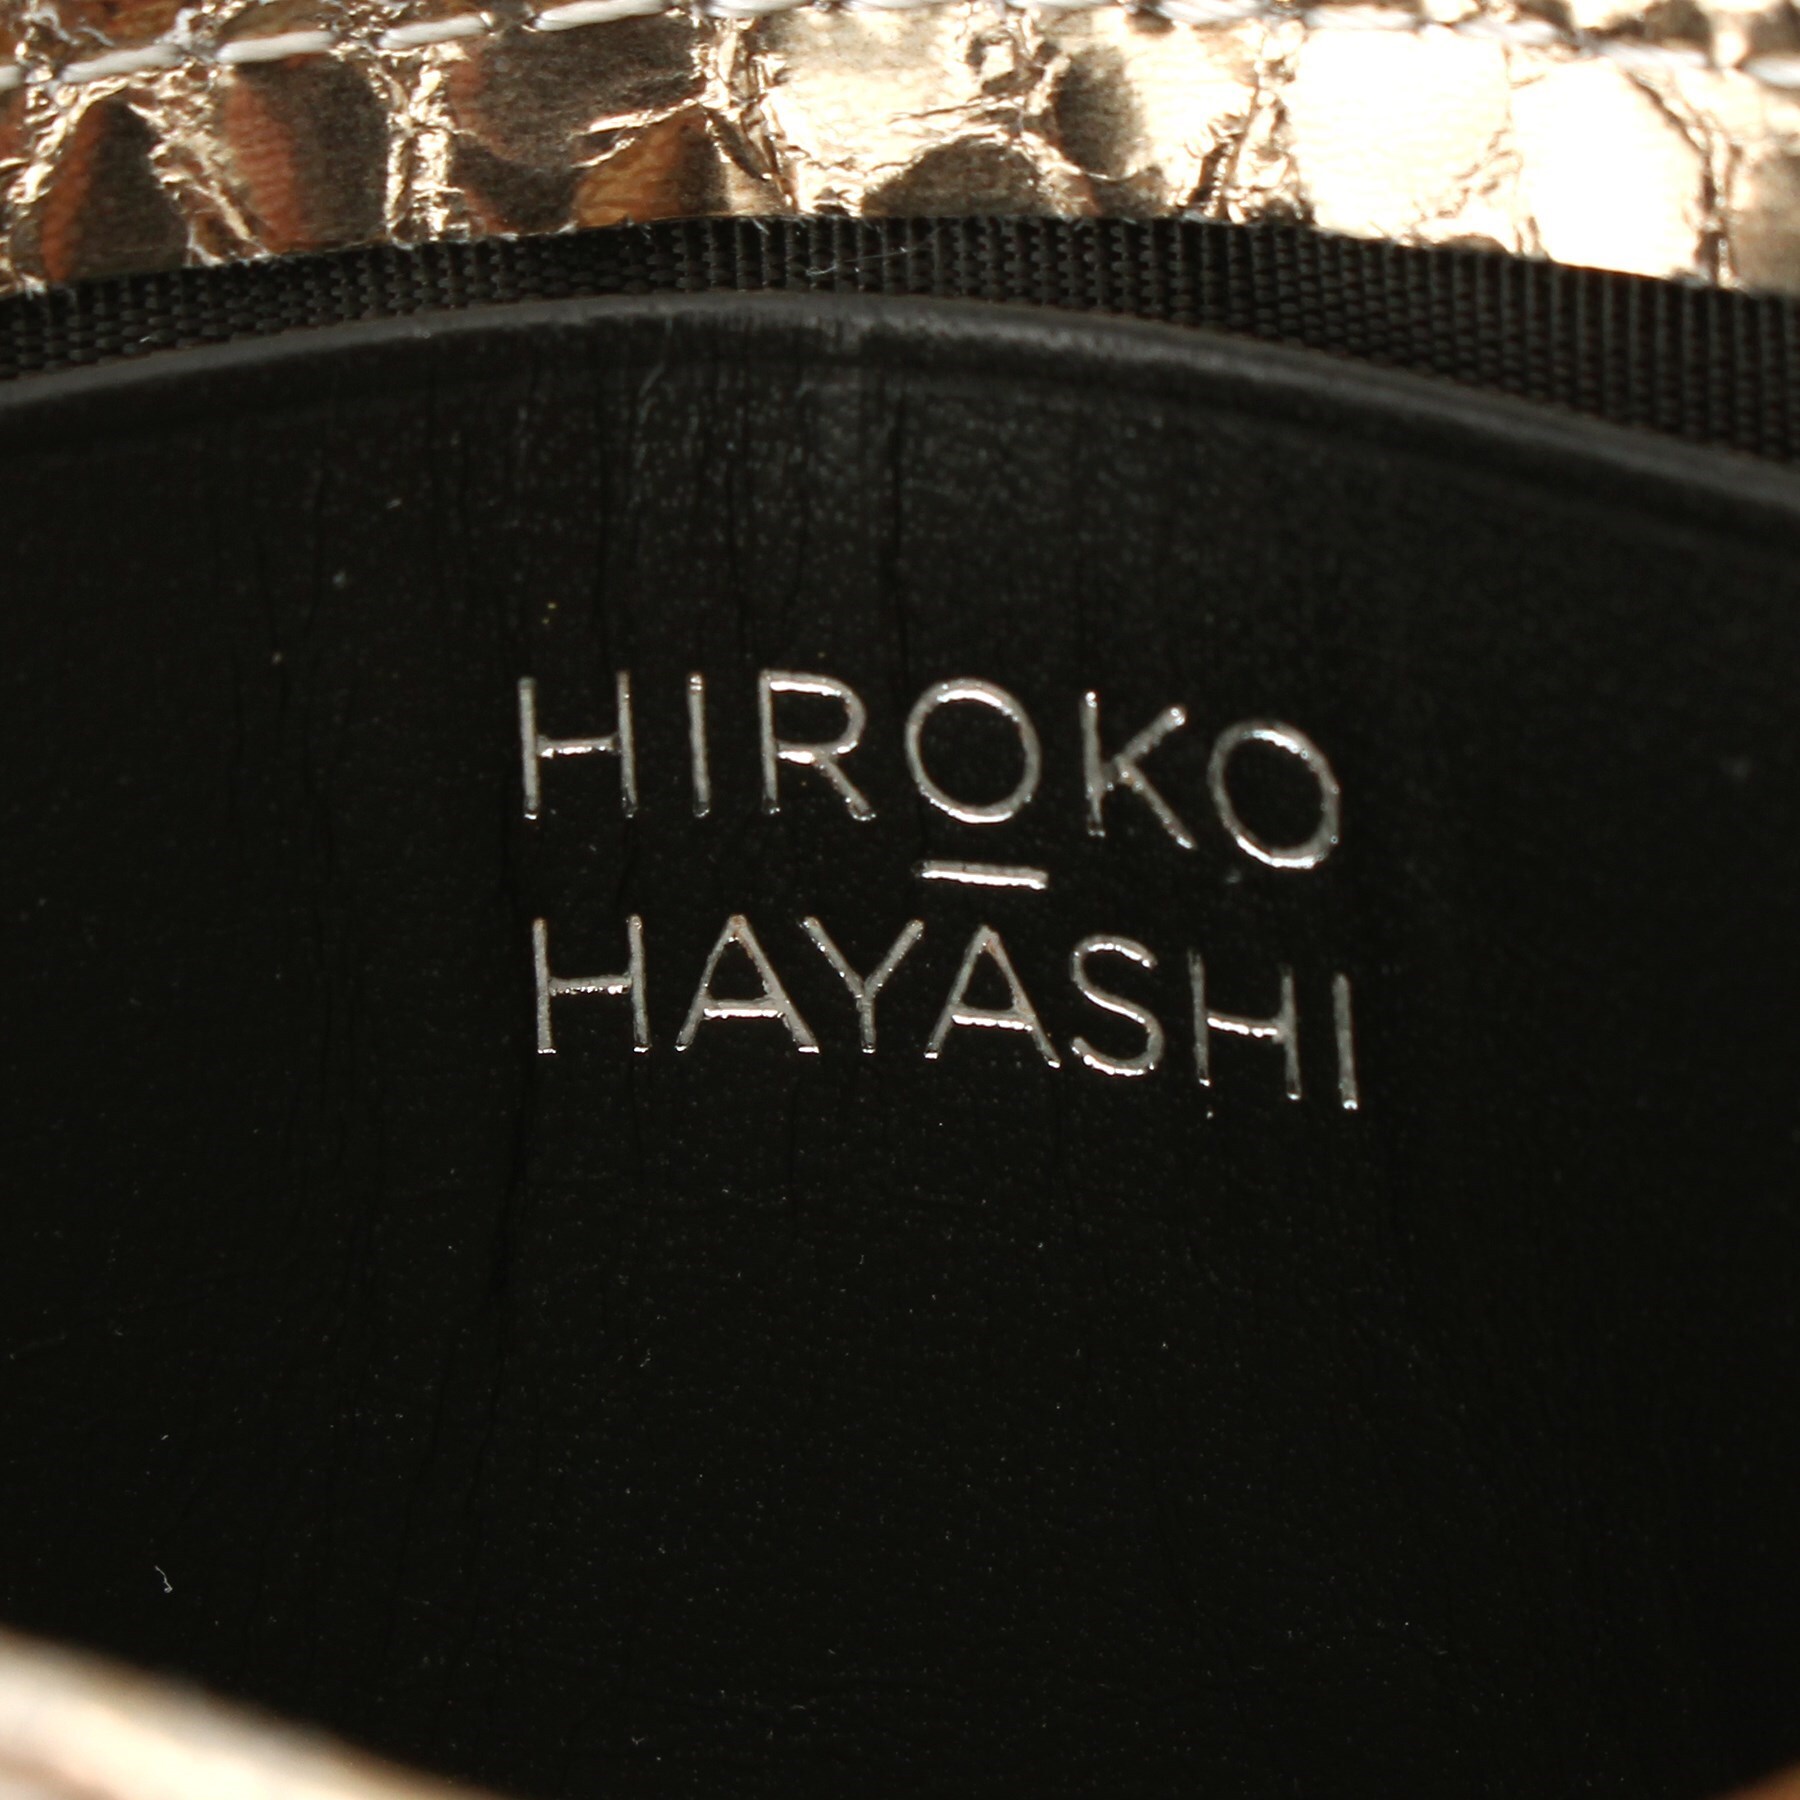 ヒロコ ハヤシ(HIROKO HAYASHI)のGATTOPARDO(ガトーパルド)名刺入れ7